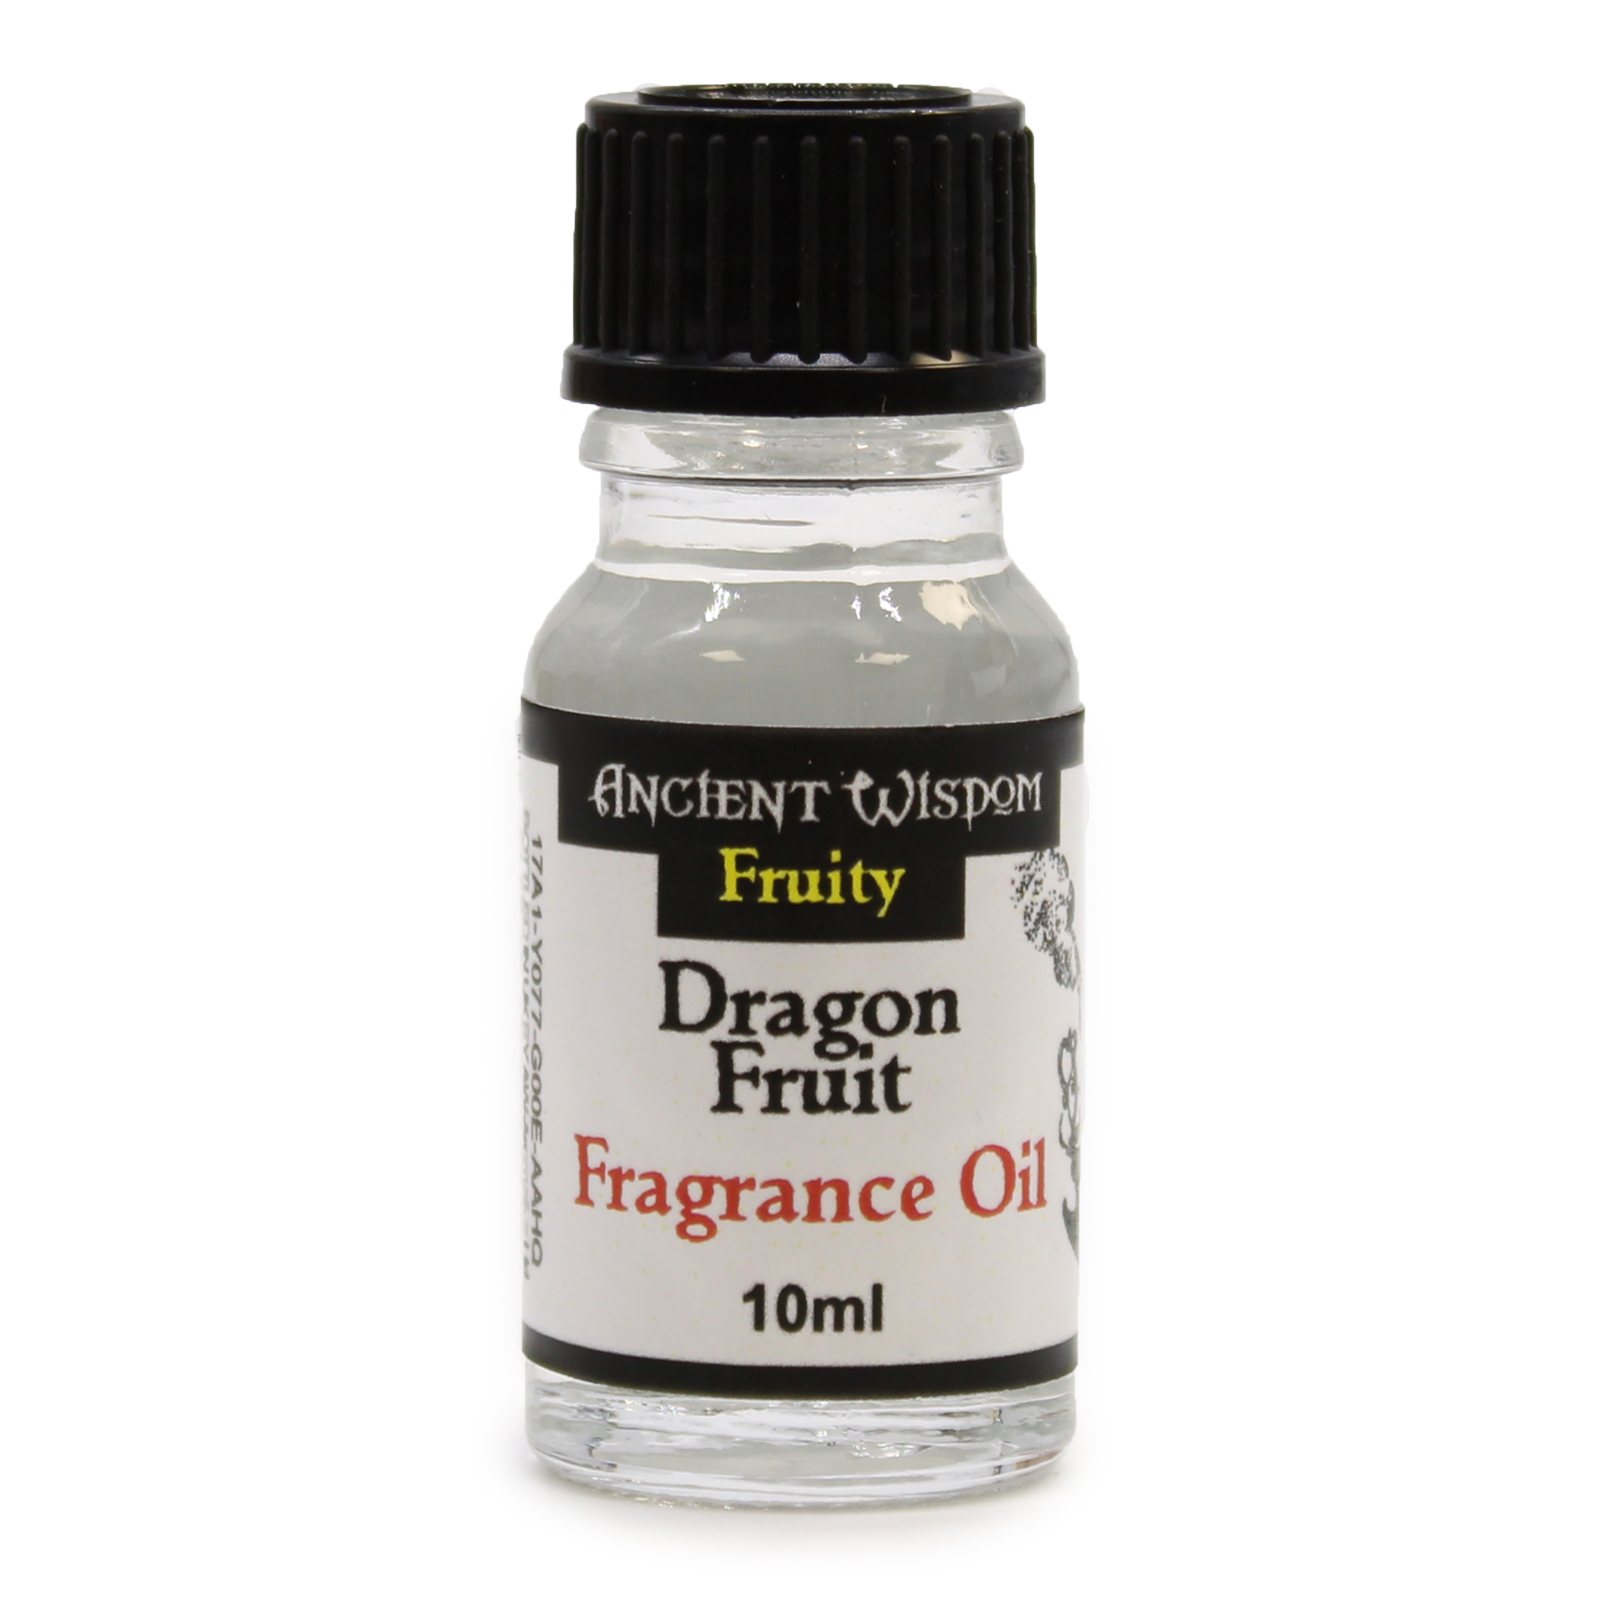 2 x 10ml Dragon Fruit Fragrance Oil Bottles